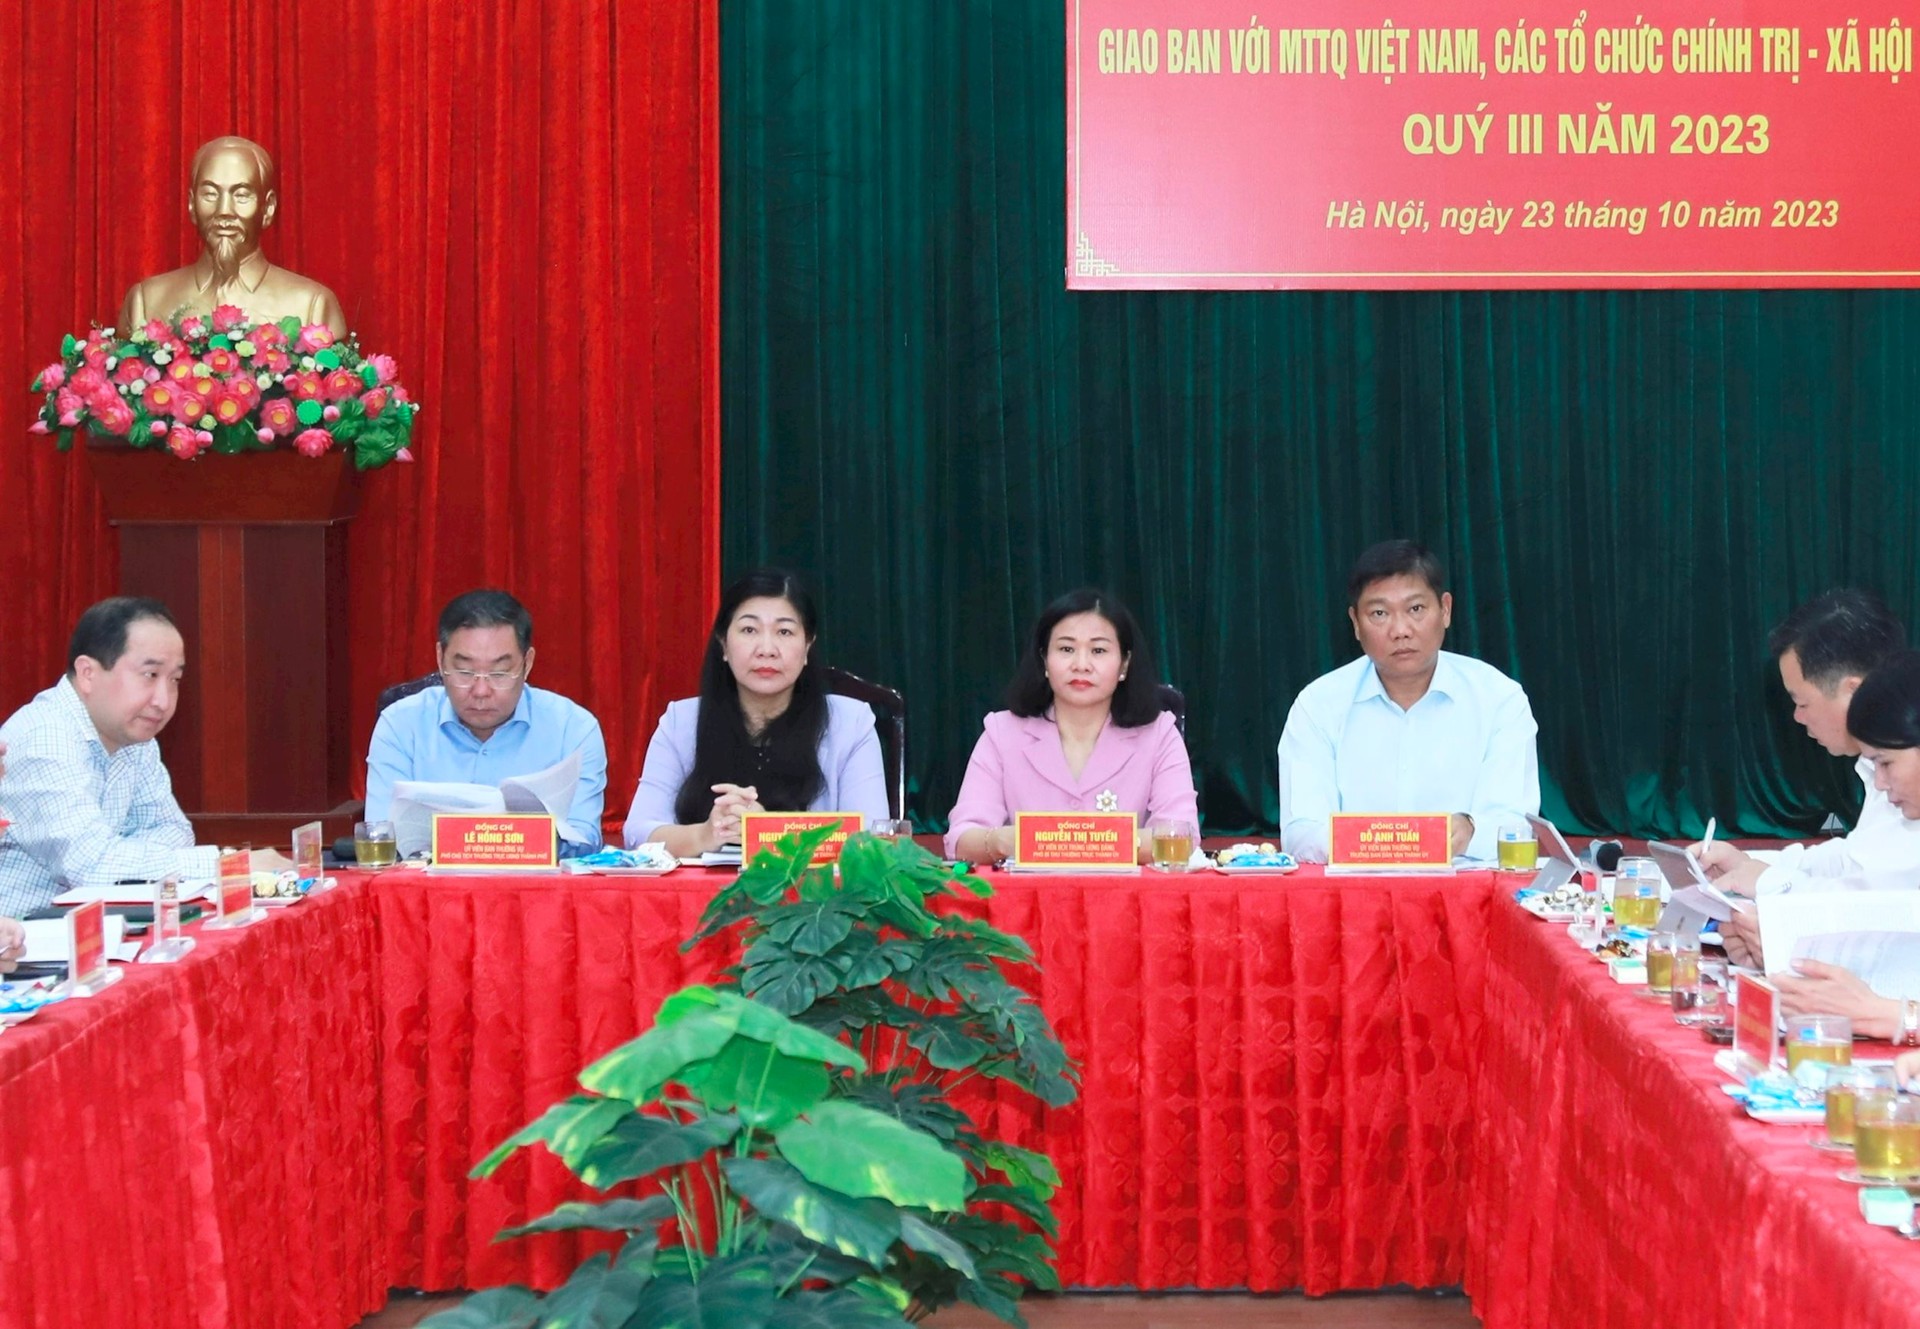 Phát huy vai trò của Mặt trận Tổ quốc Việt Nam và các tổ chức chính trị - xã hội thành phố Hà Nội